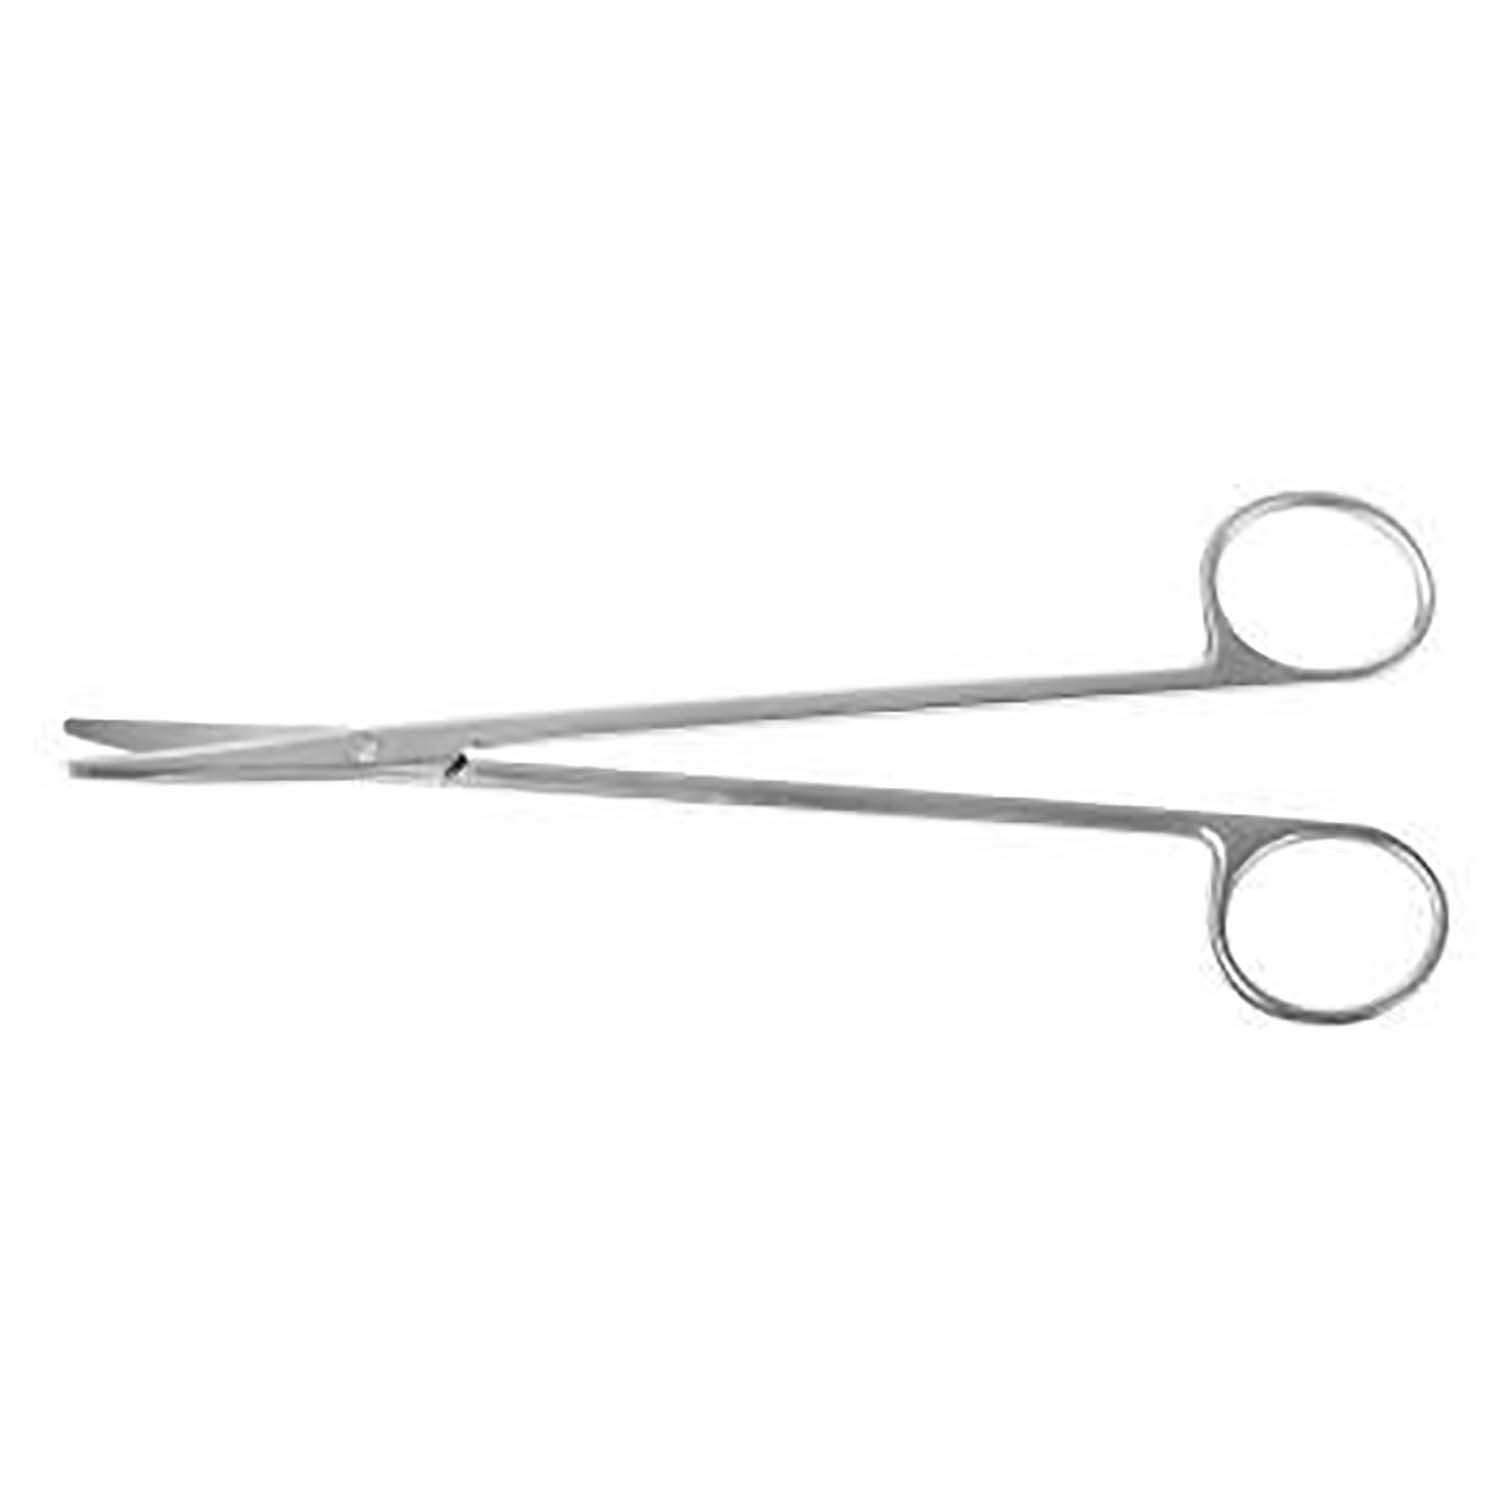 Surgical Metzenbaum Dissecting Scissor